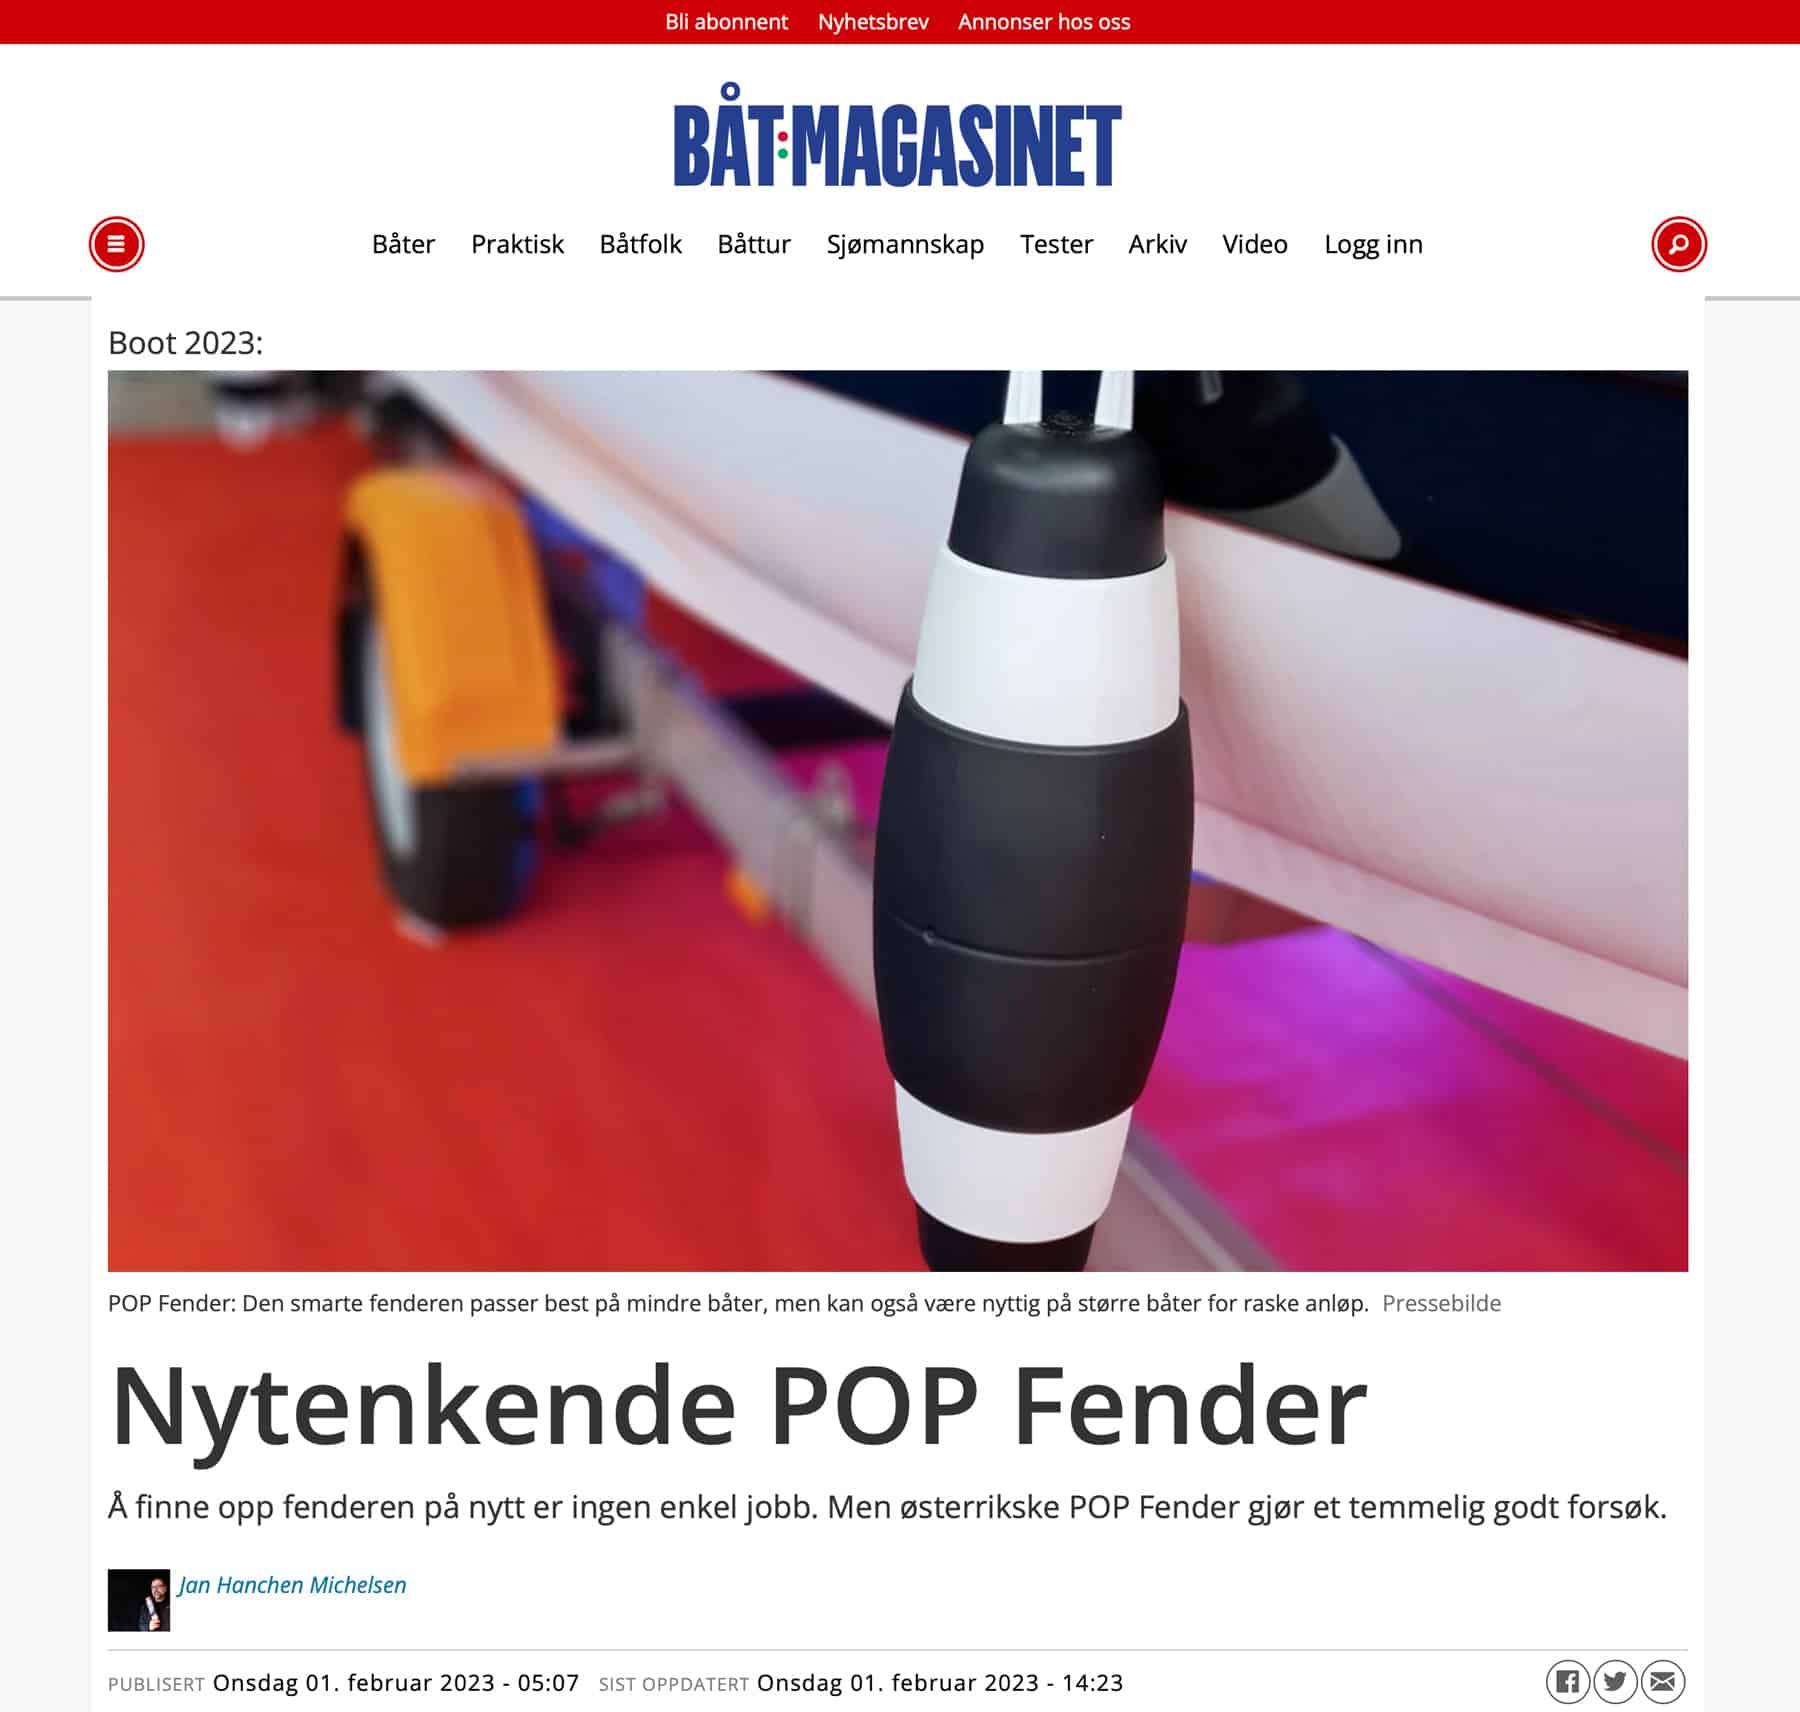 Pop Fender in der Neuen Vorarlberger Tageszeitung